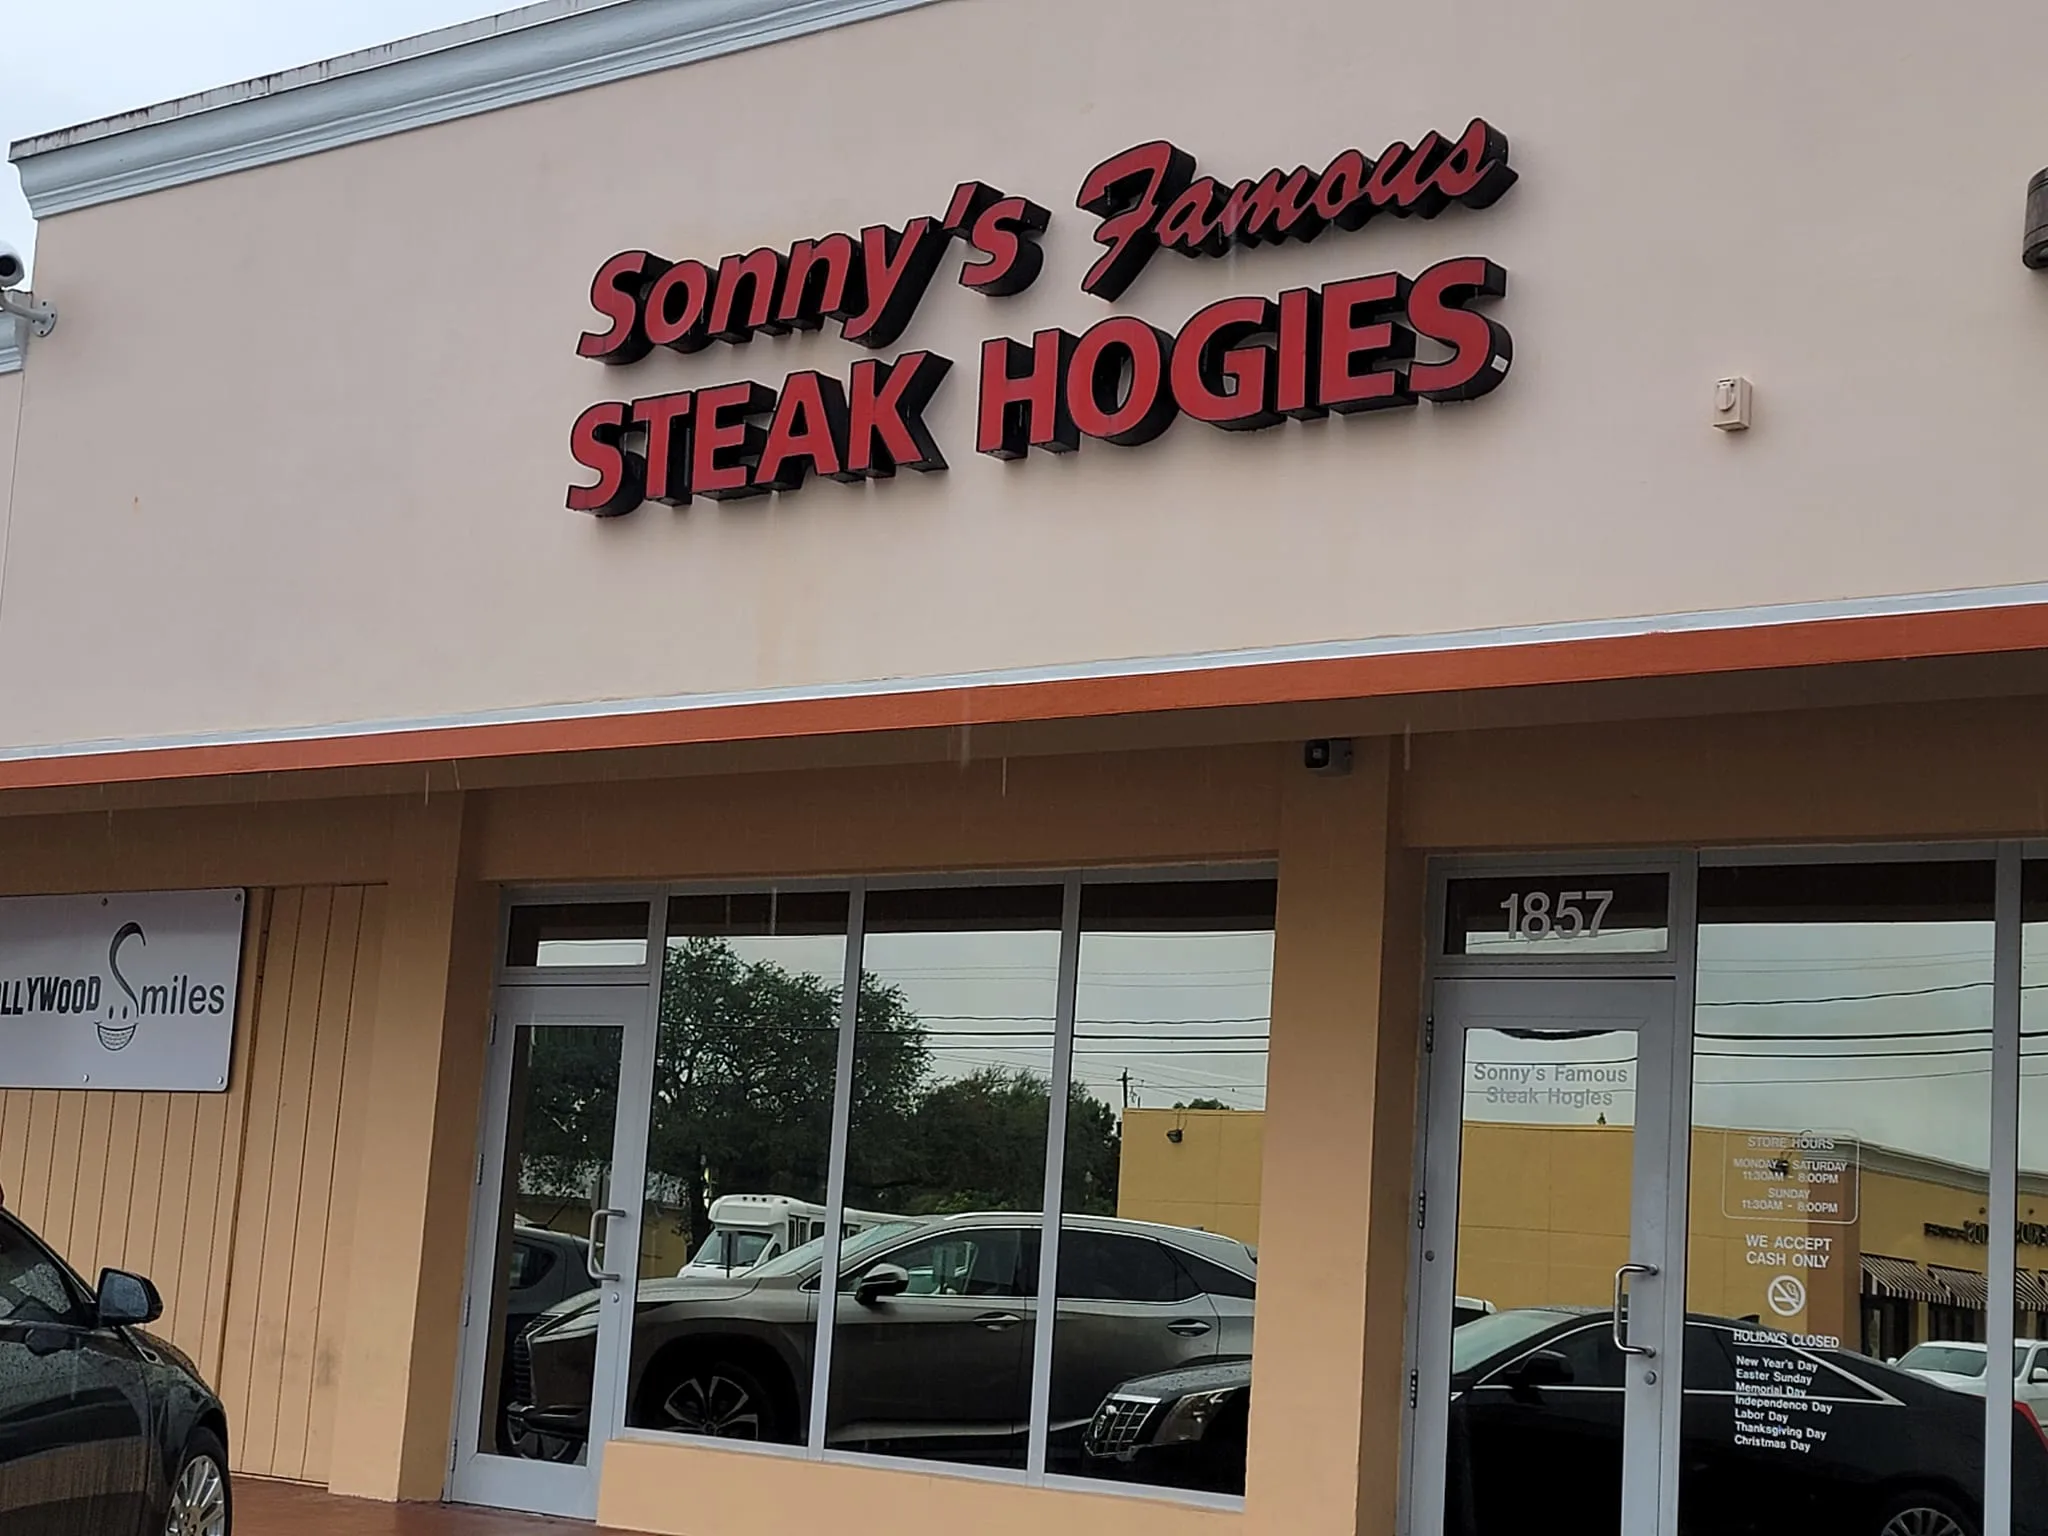 Sonnies famous steak hogies